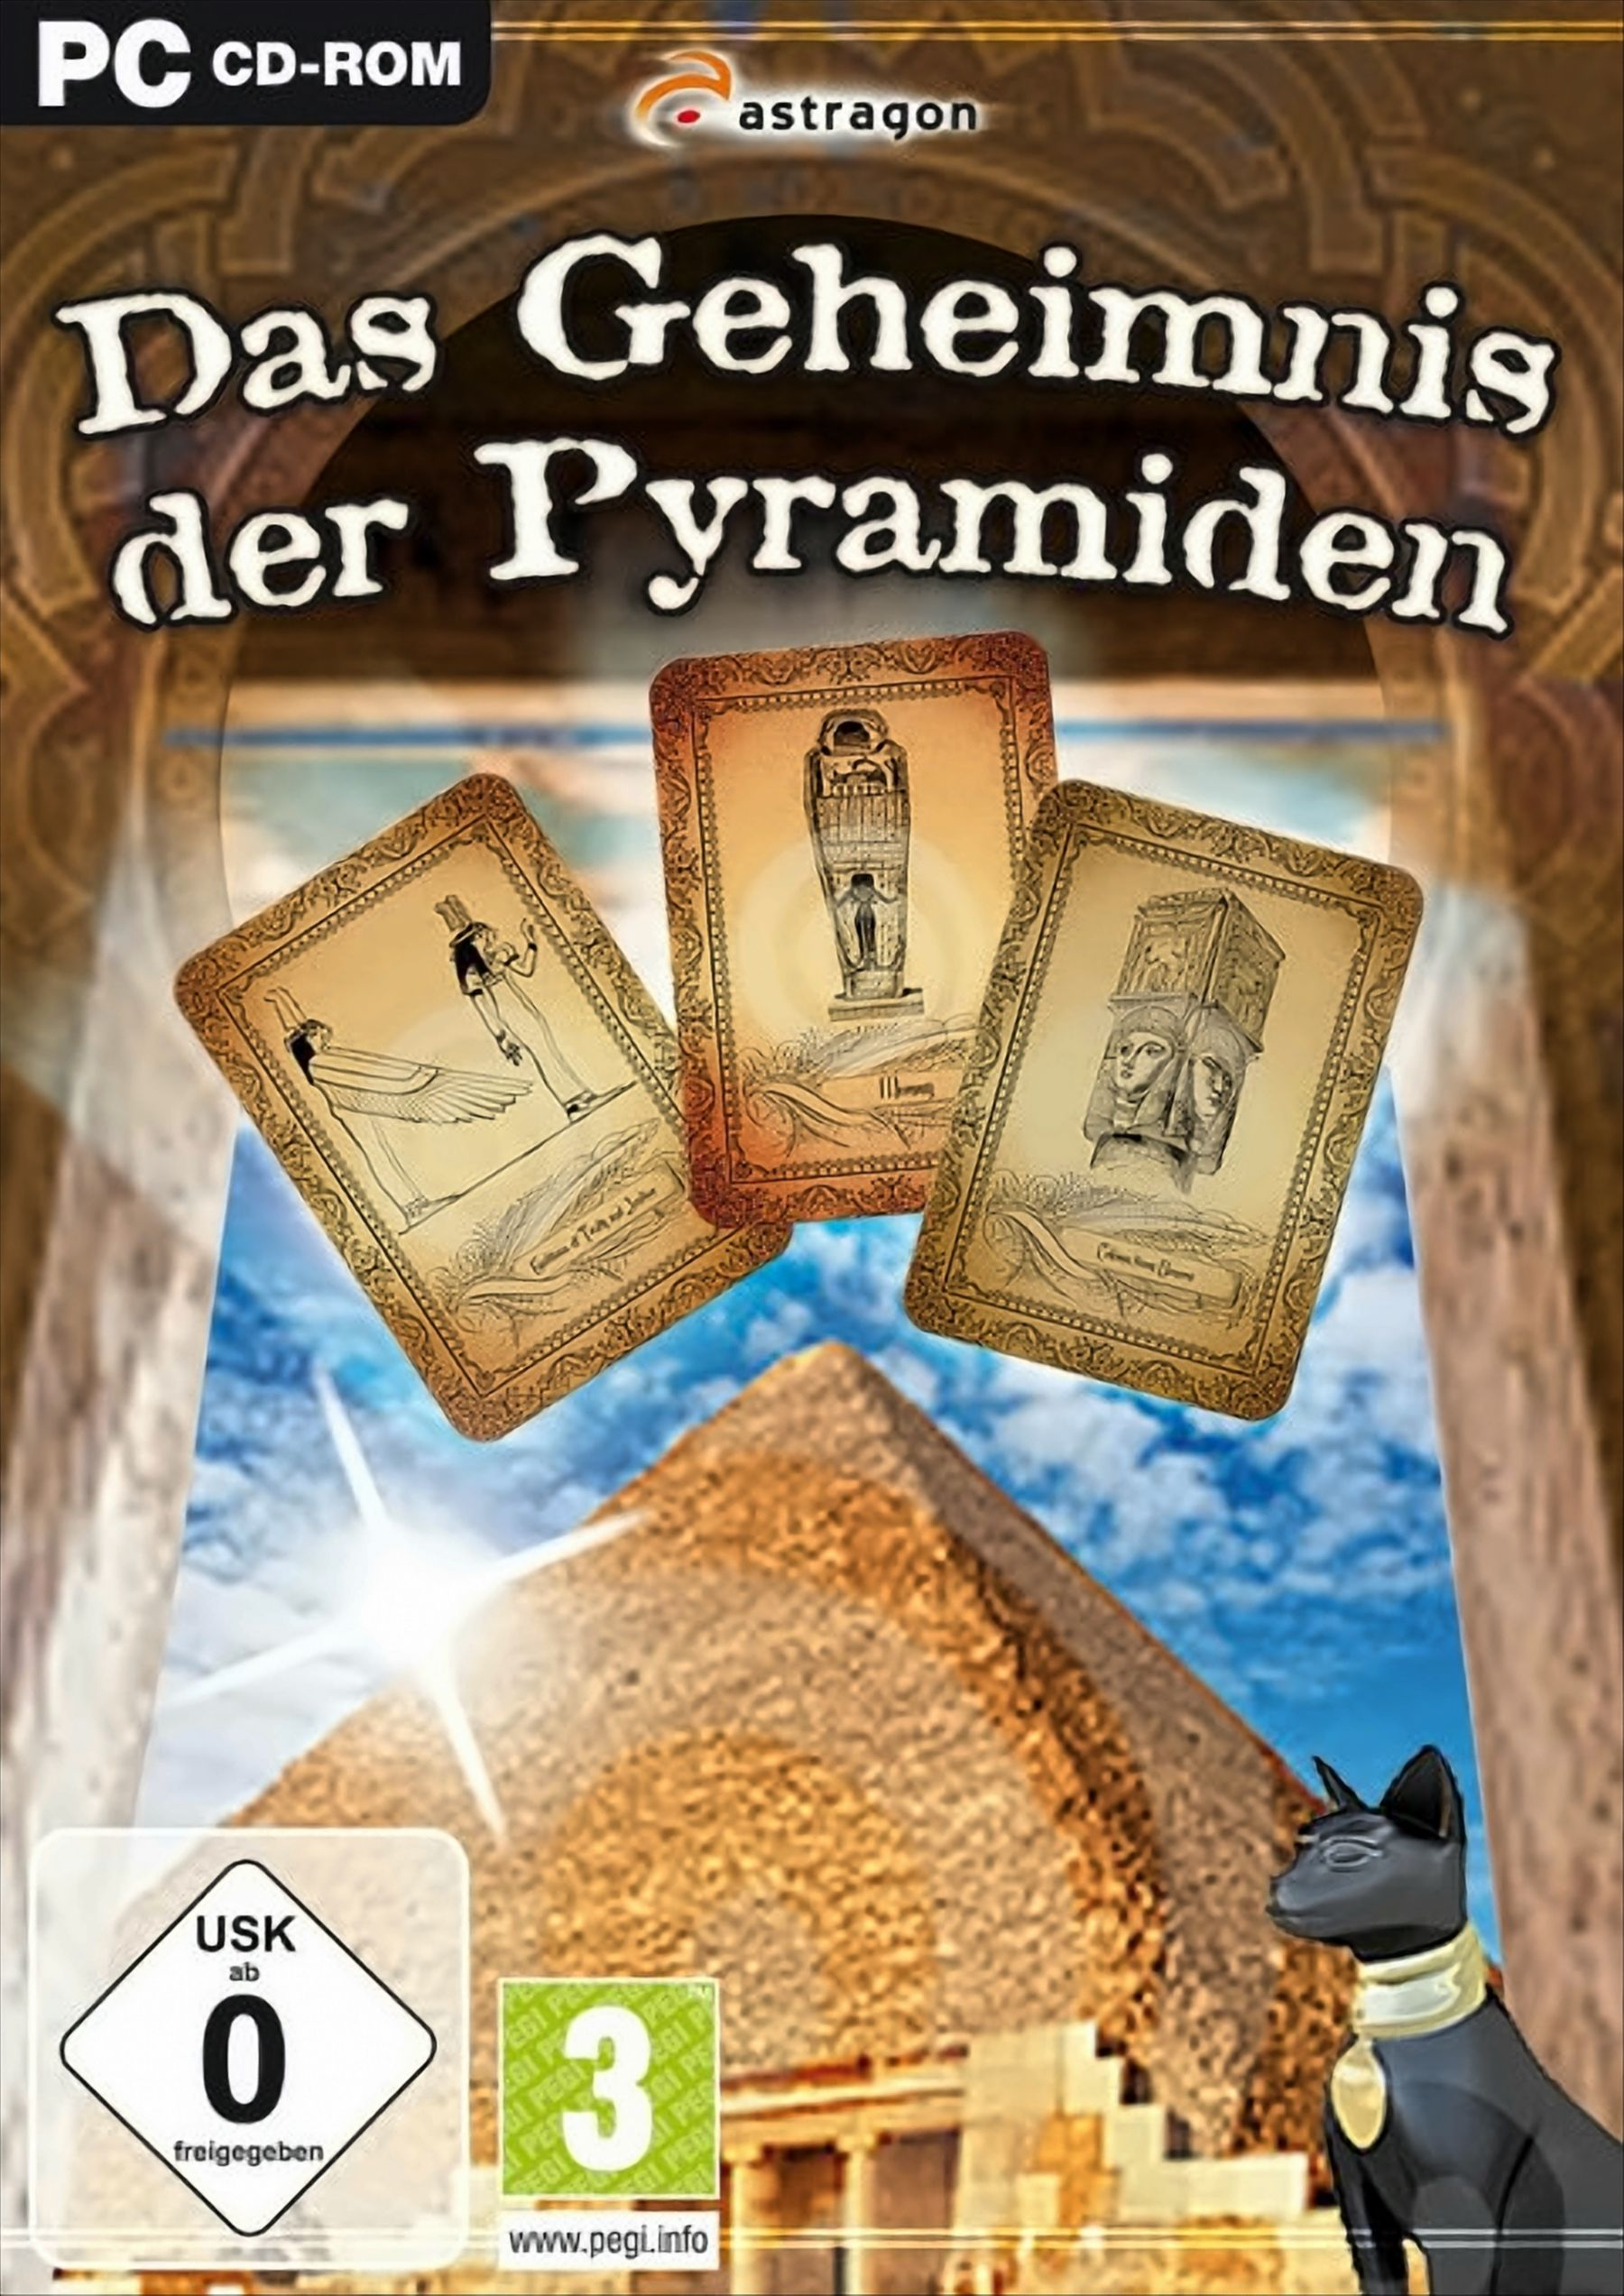 Geheimnis der - Das Pyramiden [PC]